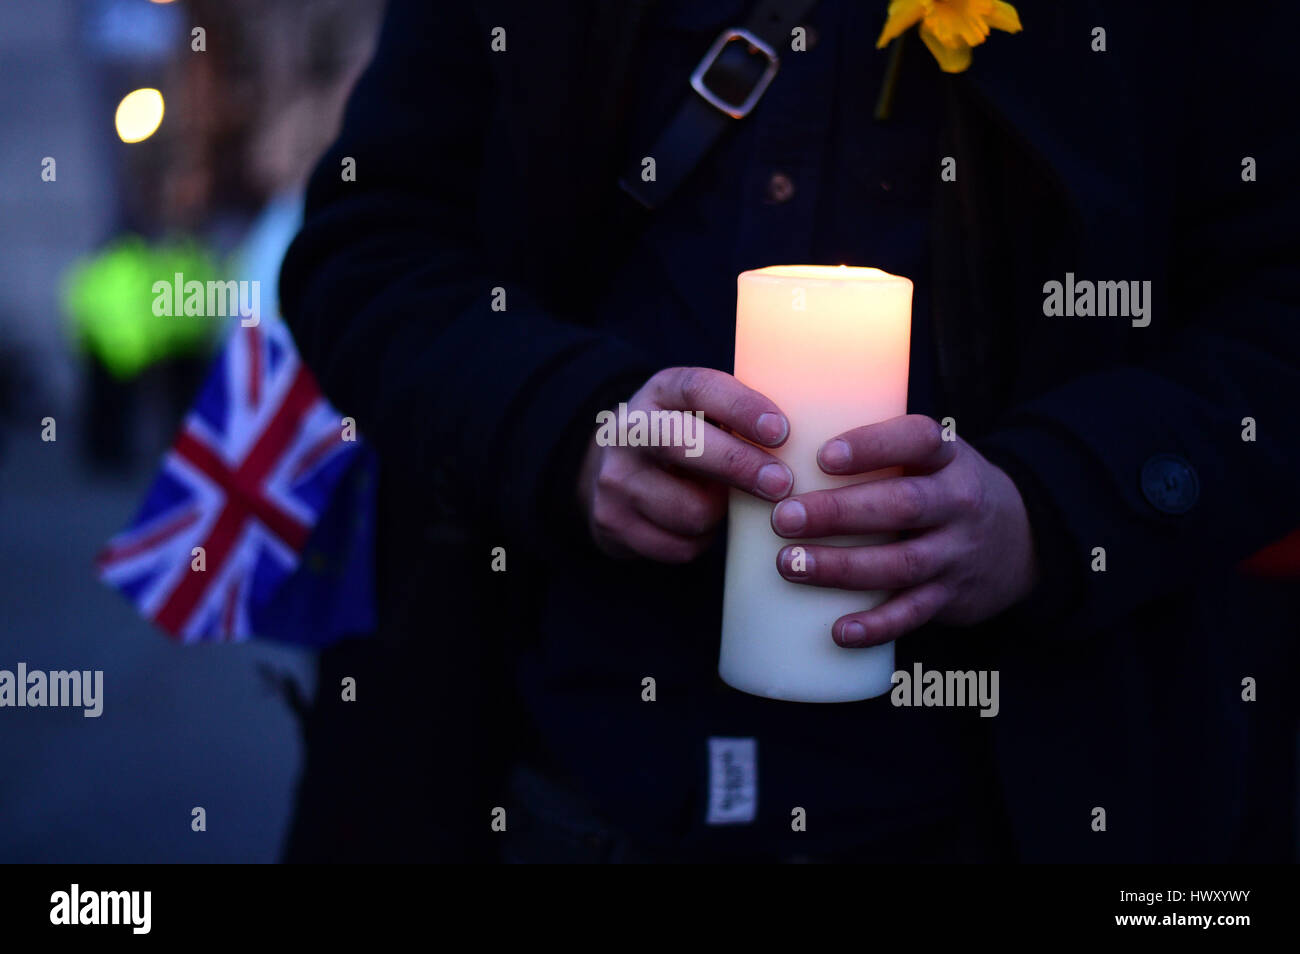 Un membro del pubblico detiene una candela durante la veglia a lume di candela in Trafalgar Square, Londra per ricordare coloro che hanno perso la vita nella Westminster attacco terroristico. Foto Stock